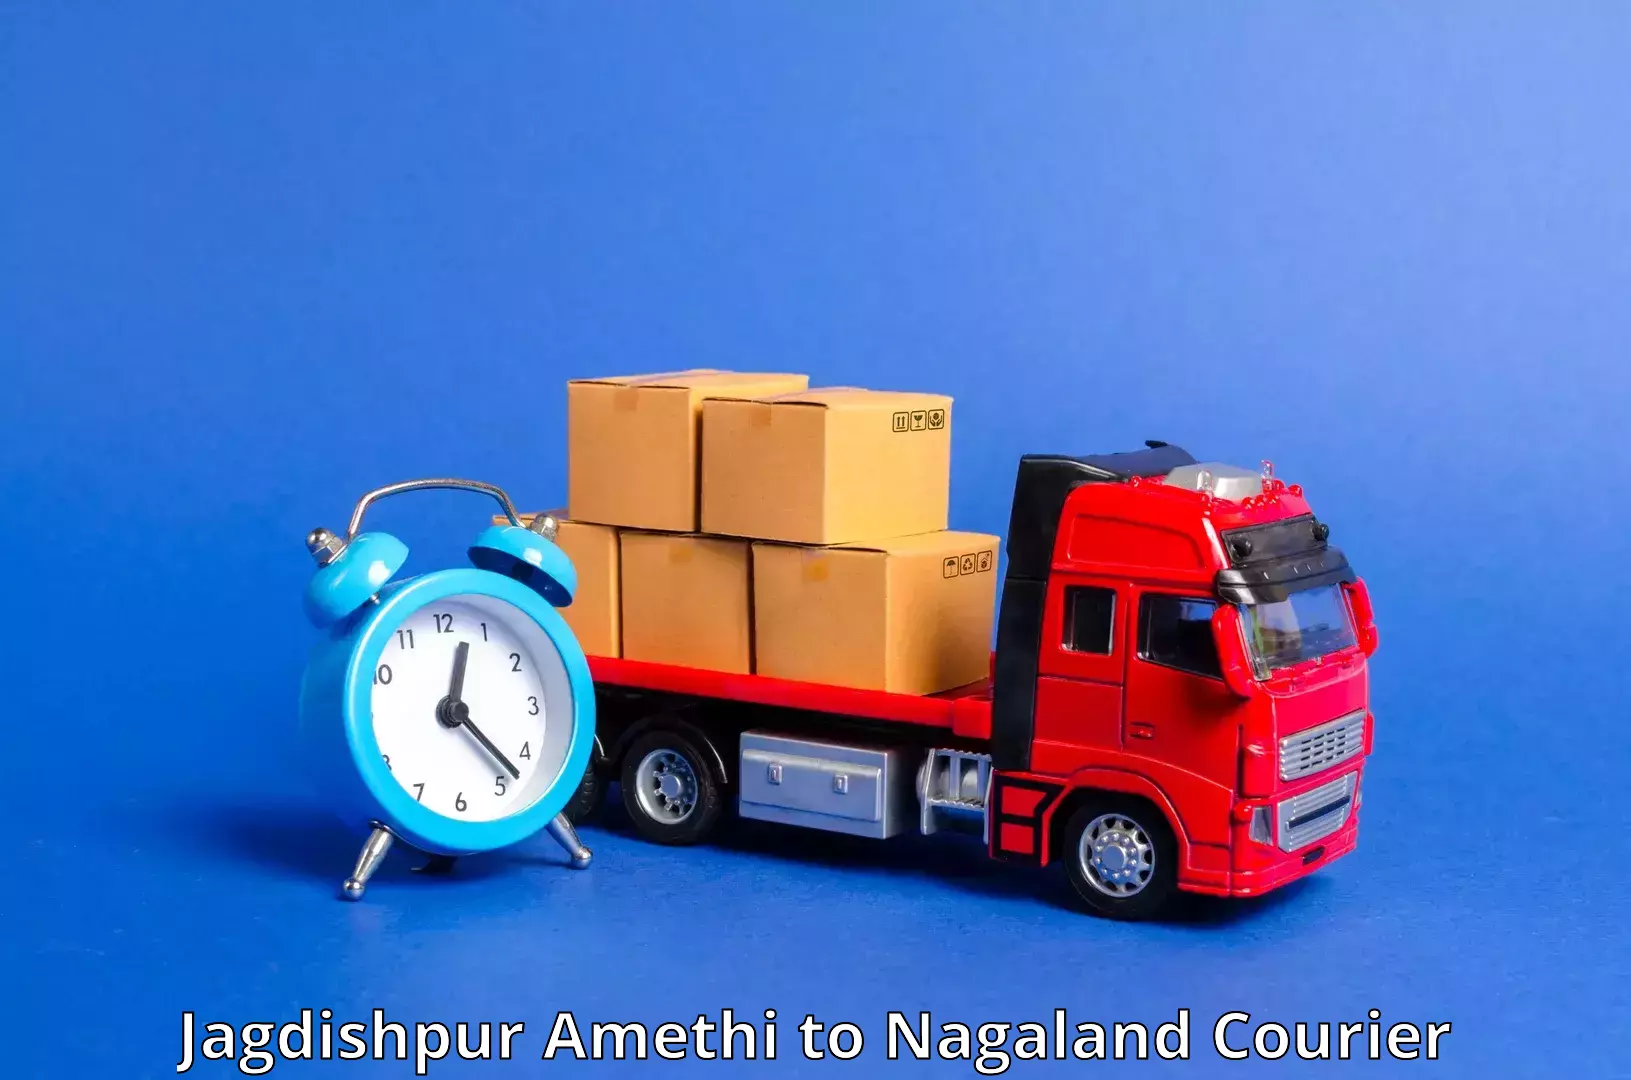 Pharmaceutical courier Jagdishpur Amethi to Longleng